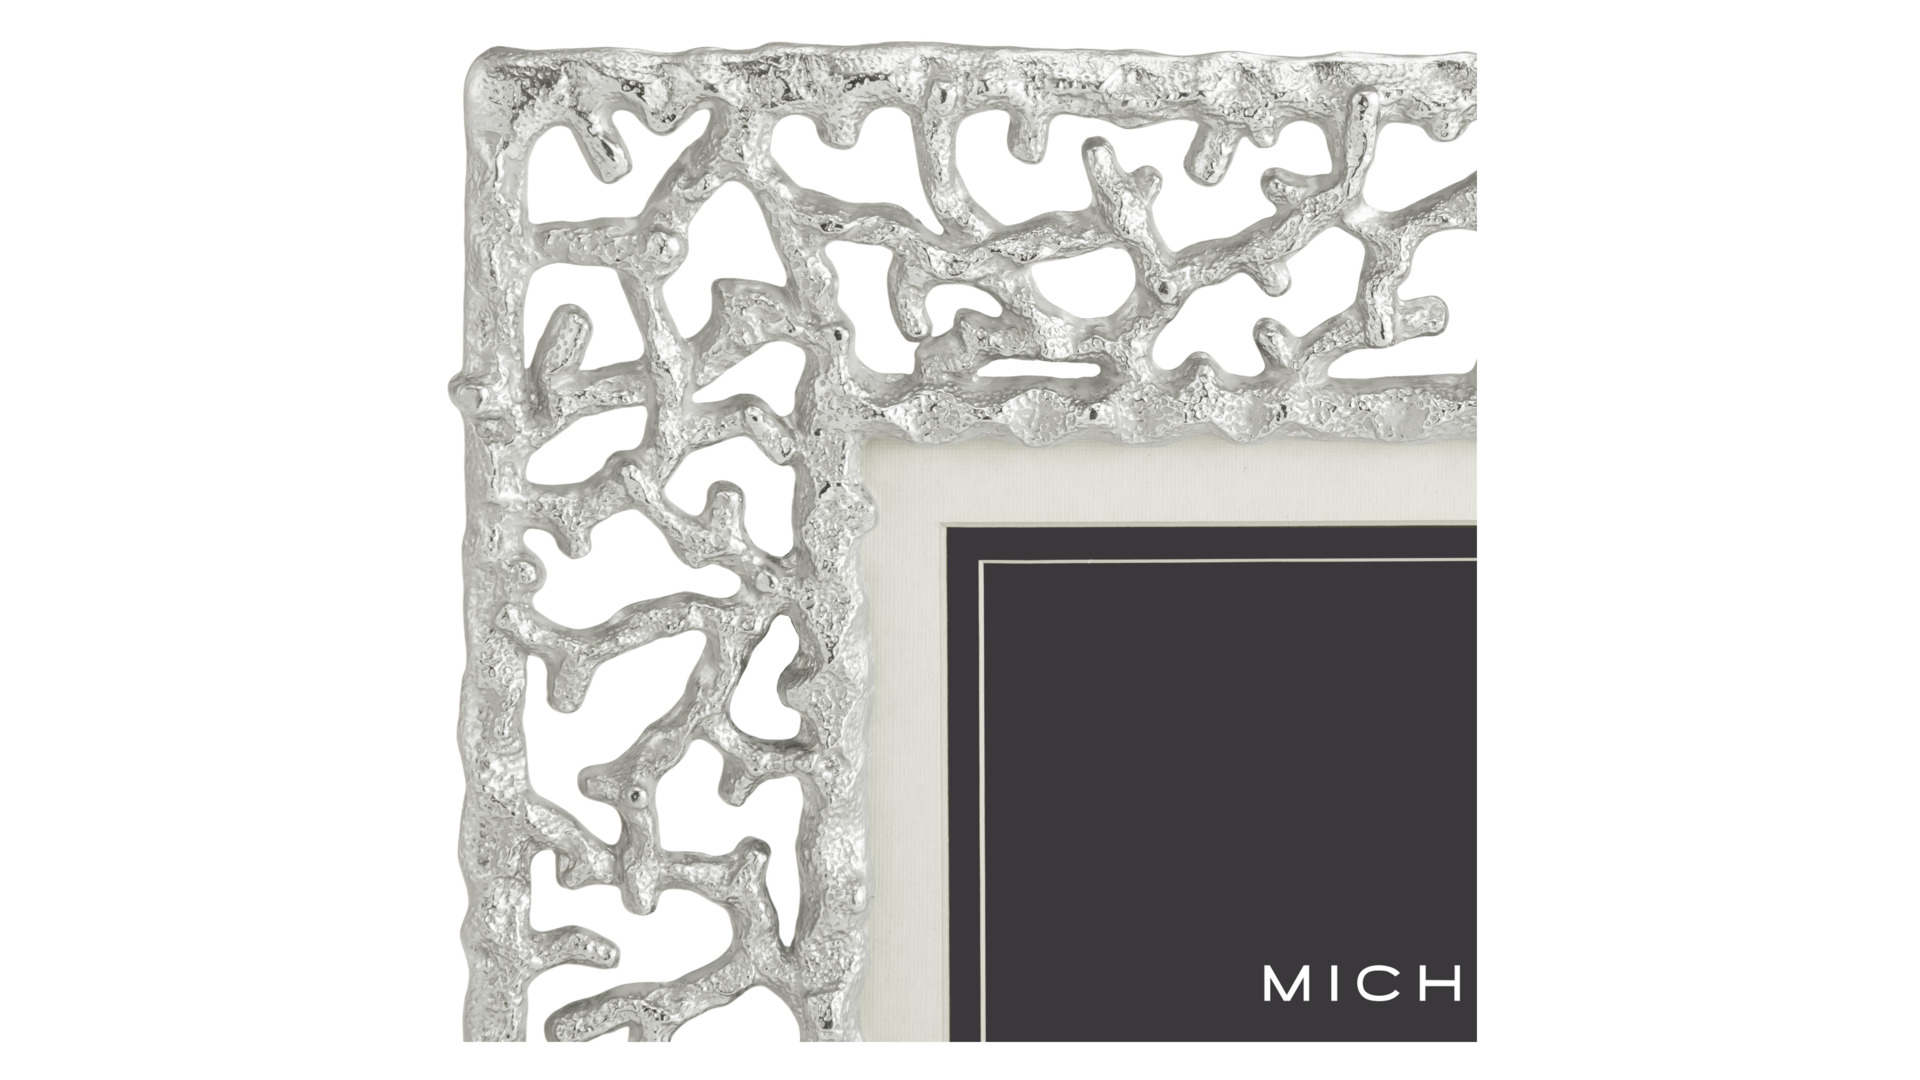 Рамка для фото Michael Aram Коралловый риф 10х15 см, сталь нержавеющая, серебристая